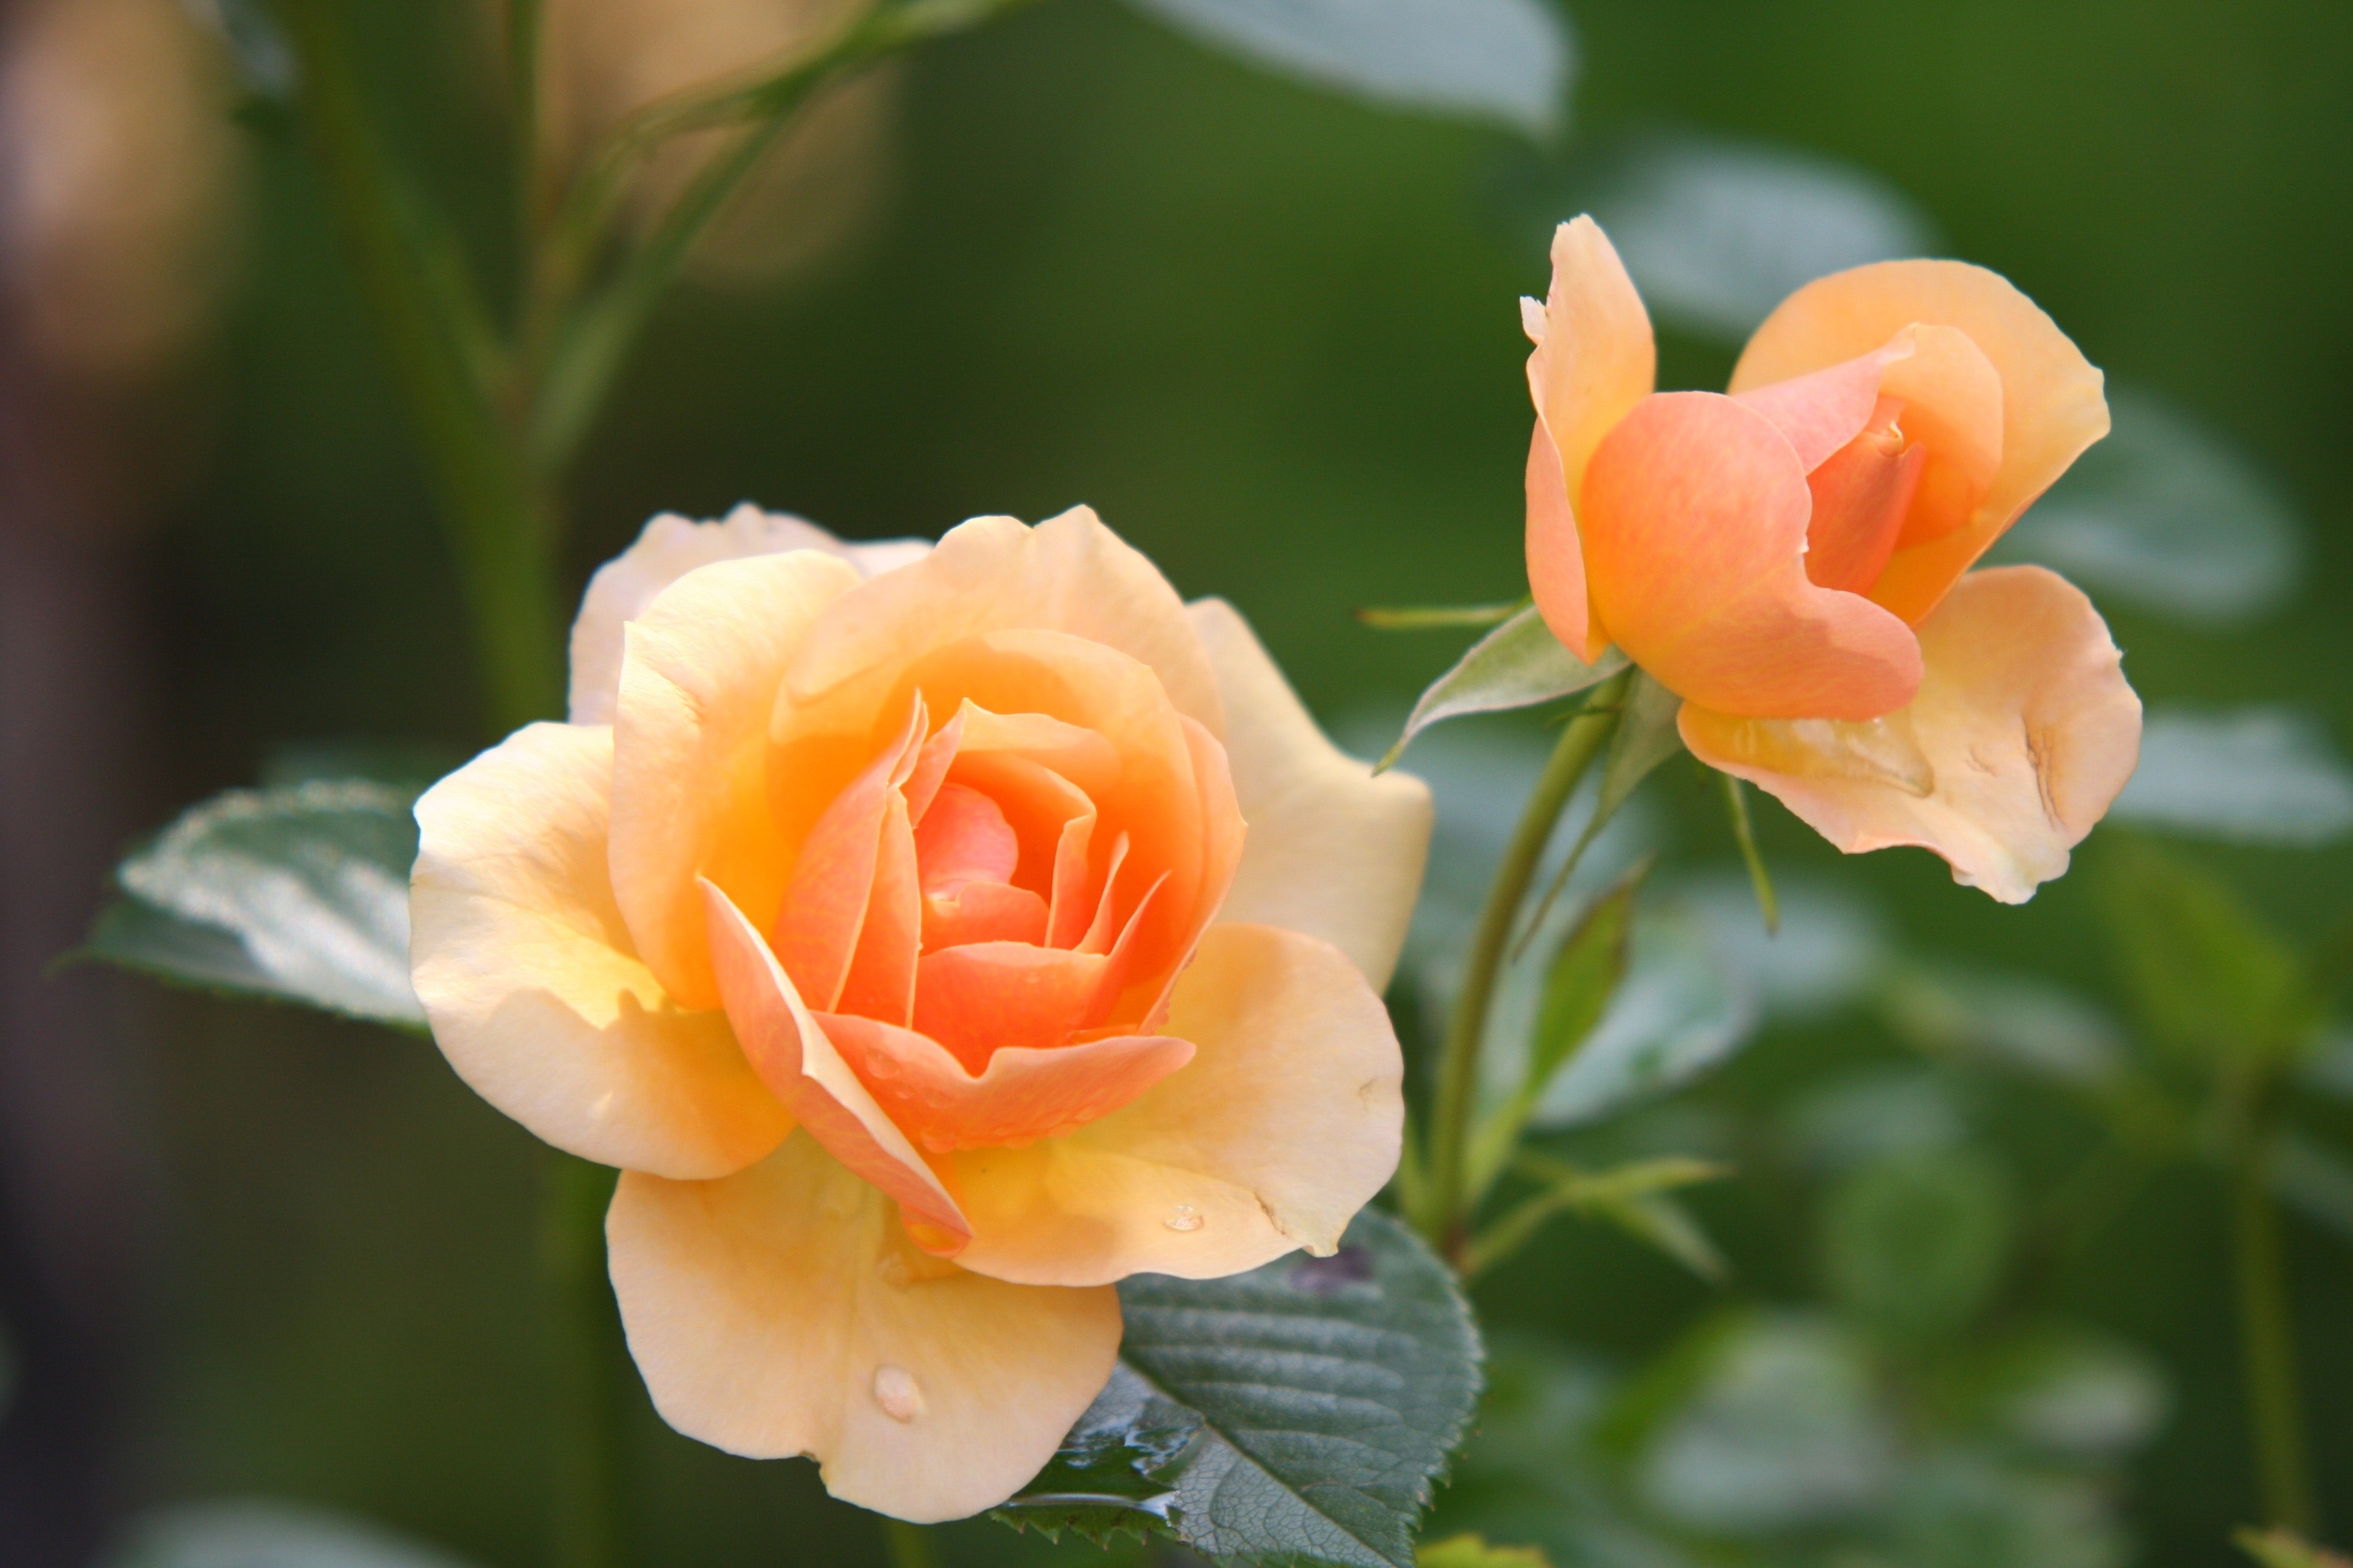 Las rosas mantienen todo el año su floración.  Necesitan de ciertos cuidados.   (Foto Prensa Libre: Pexels-Pixabay).